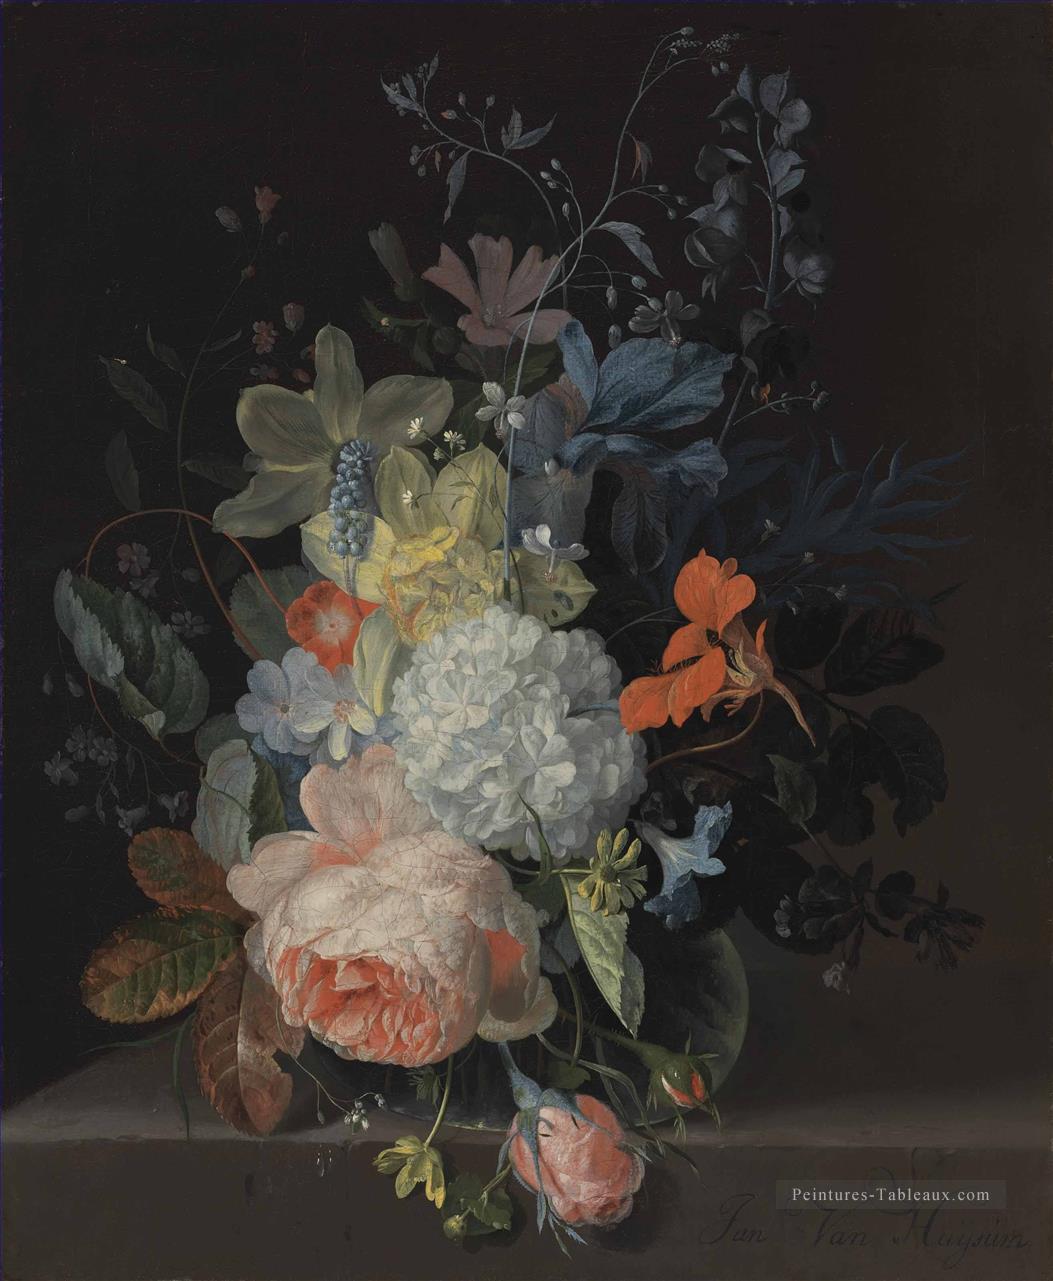 Une rose une boule de neige jonquilles Iris et d’autres fleurs dans un vase en verre sur un rebord de Pierre Jan van Huysum fleurs classiques Peintures à l'huile